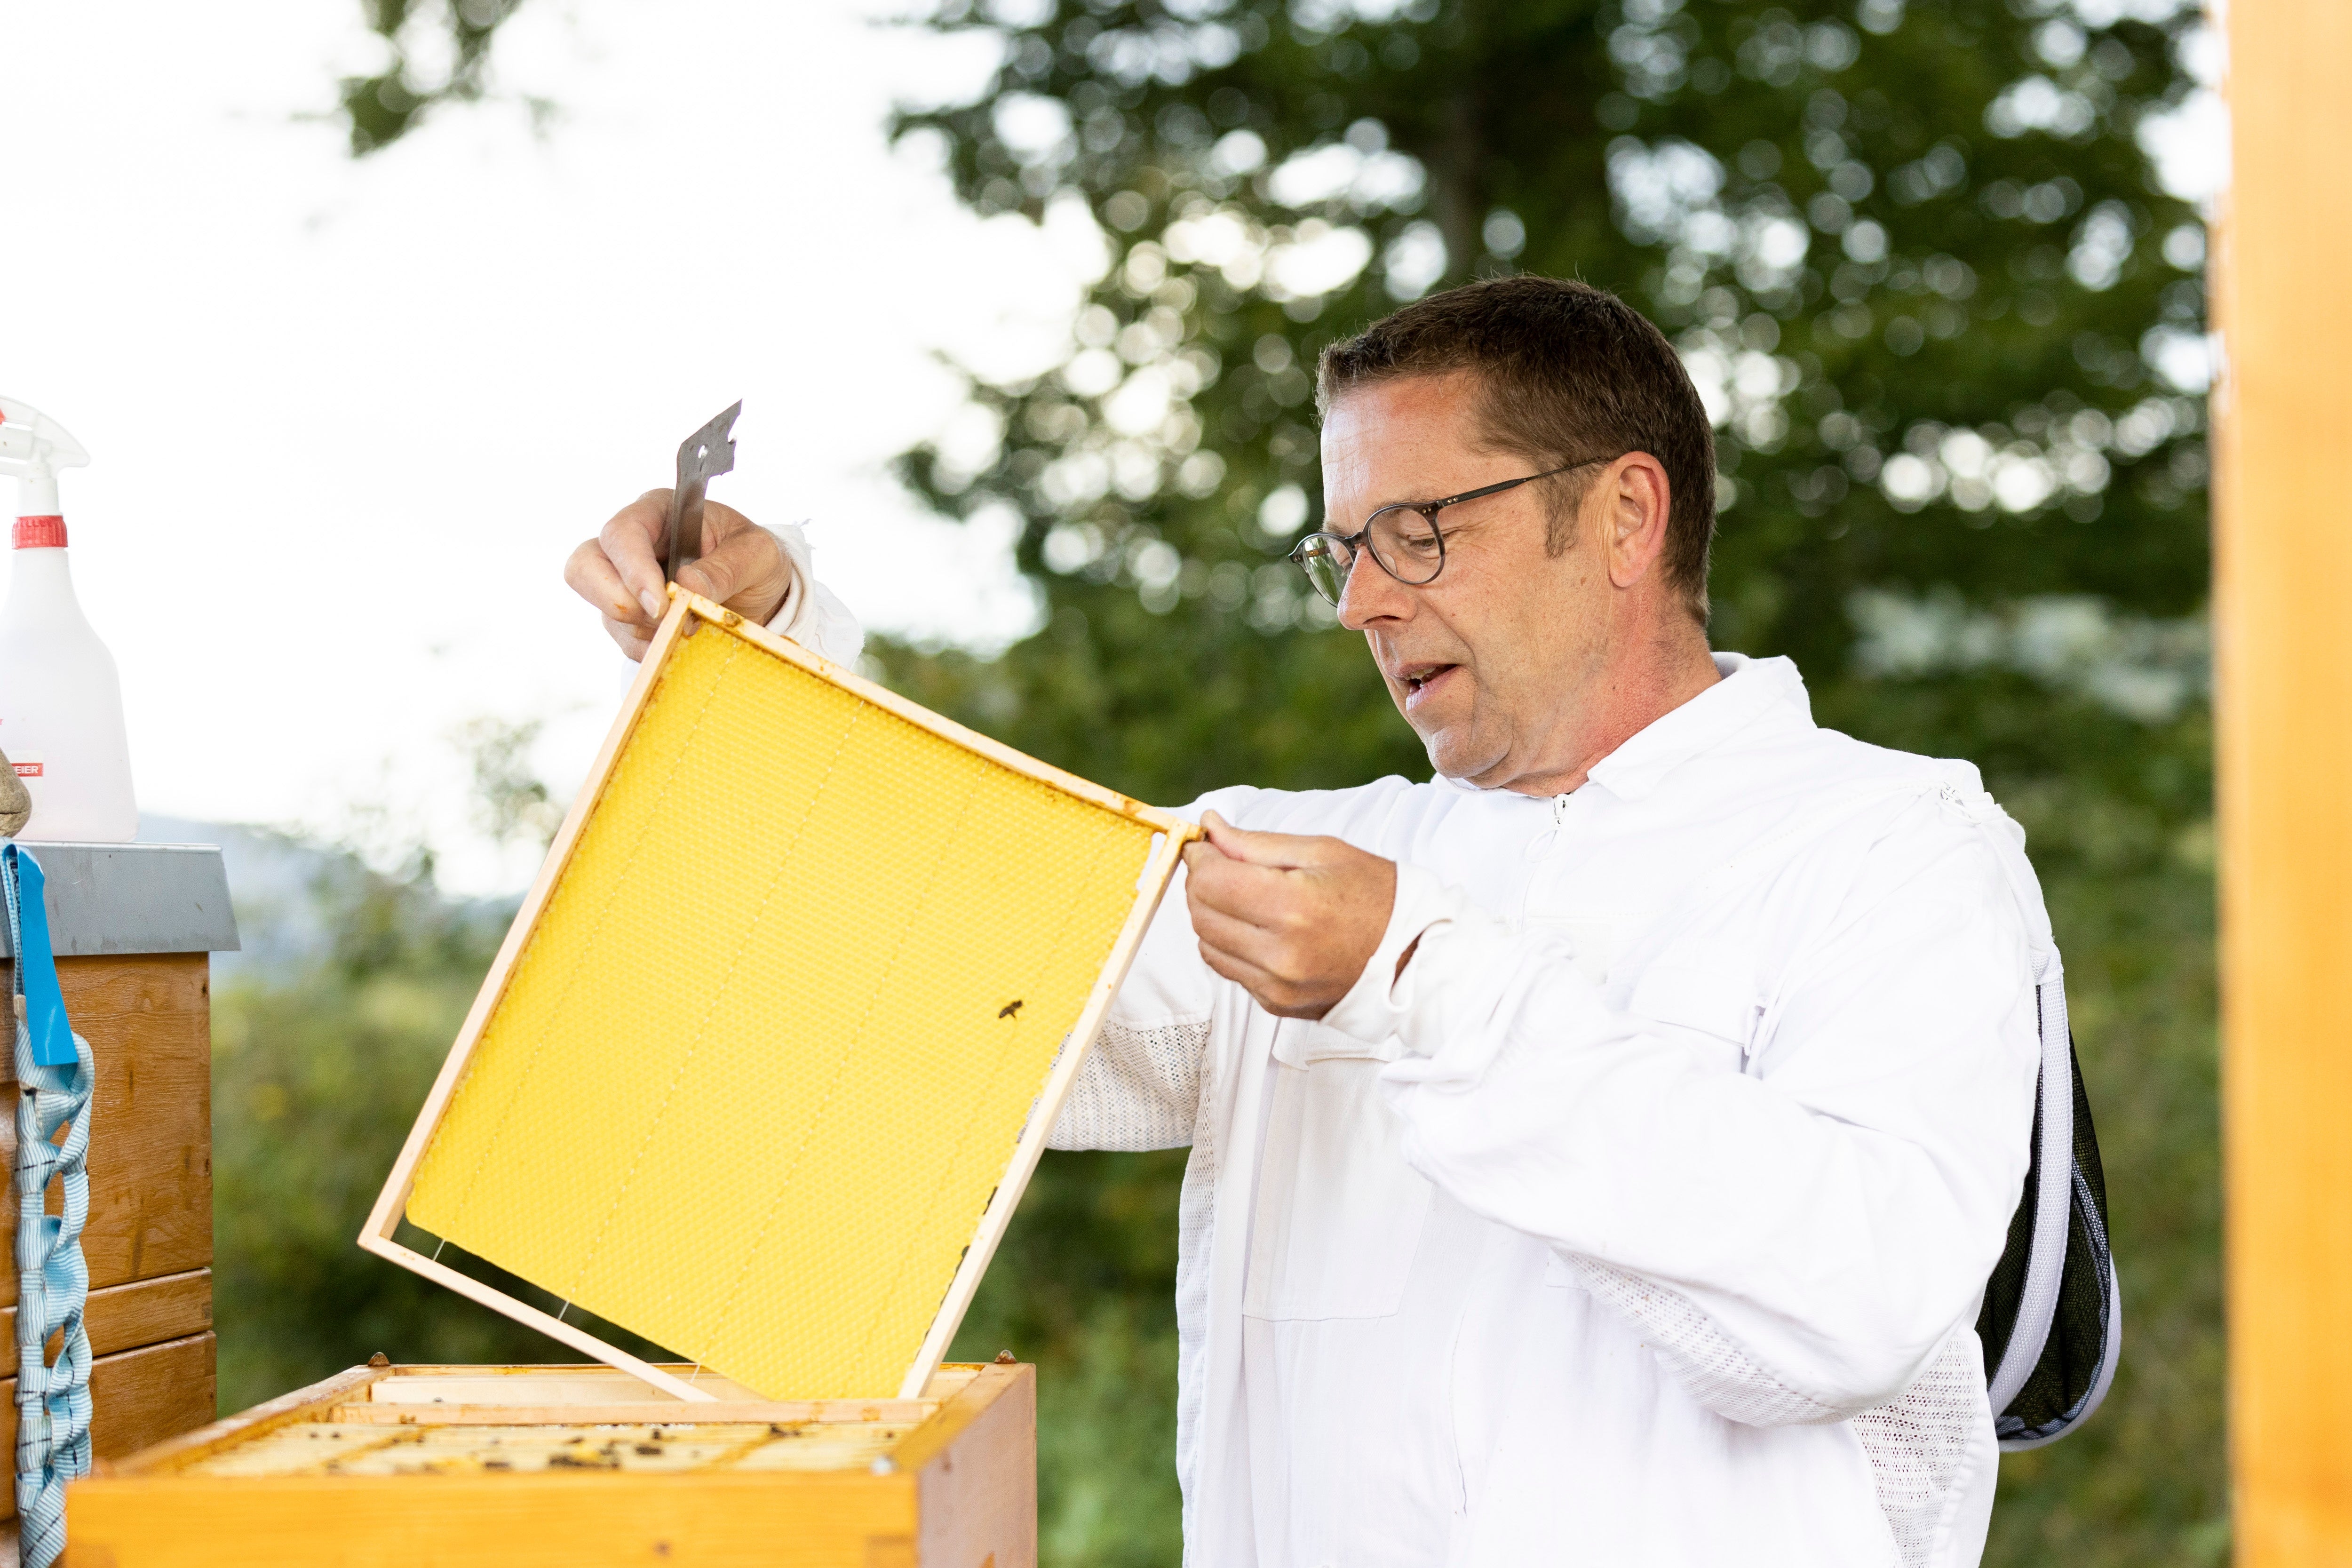 Bienenschwarm Attracture Lure Bienenstock Imkerei Früchte Attraktor Imker 